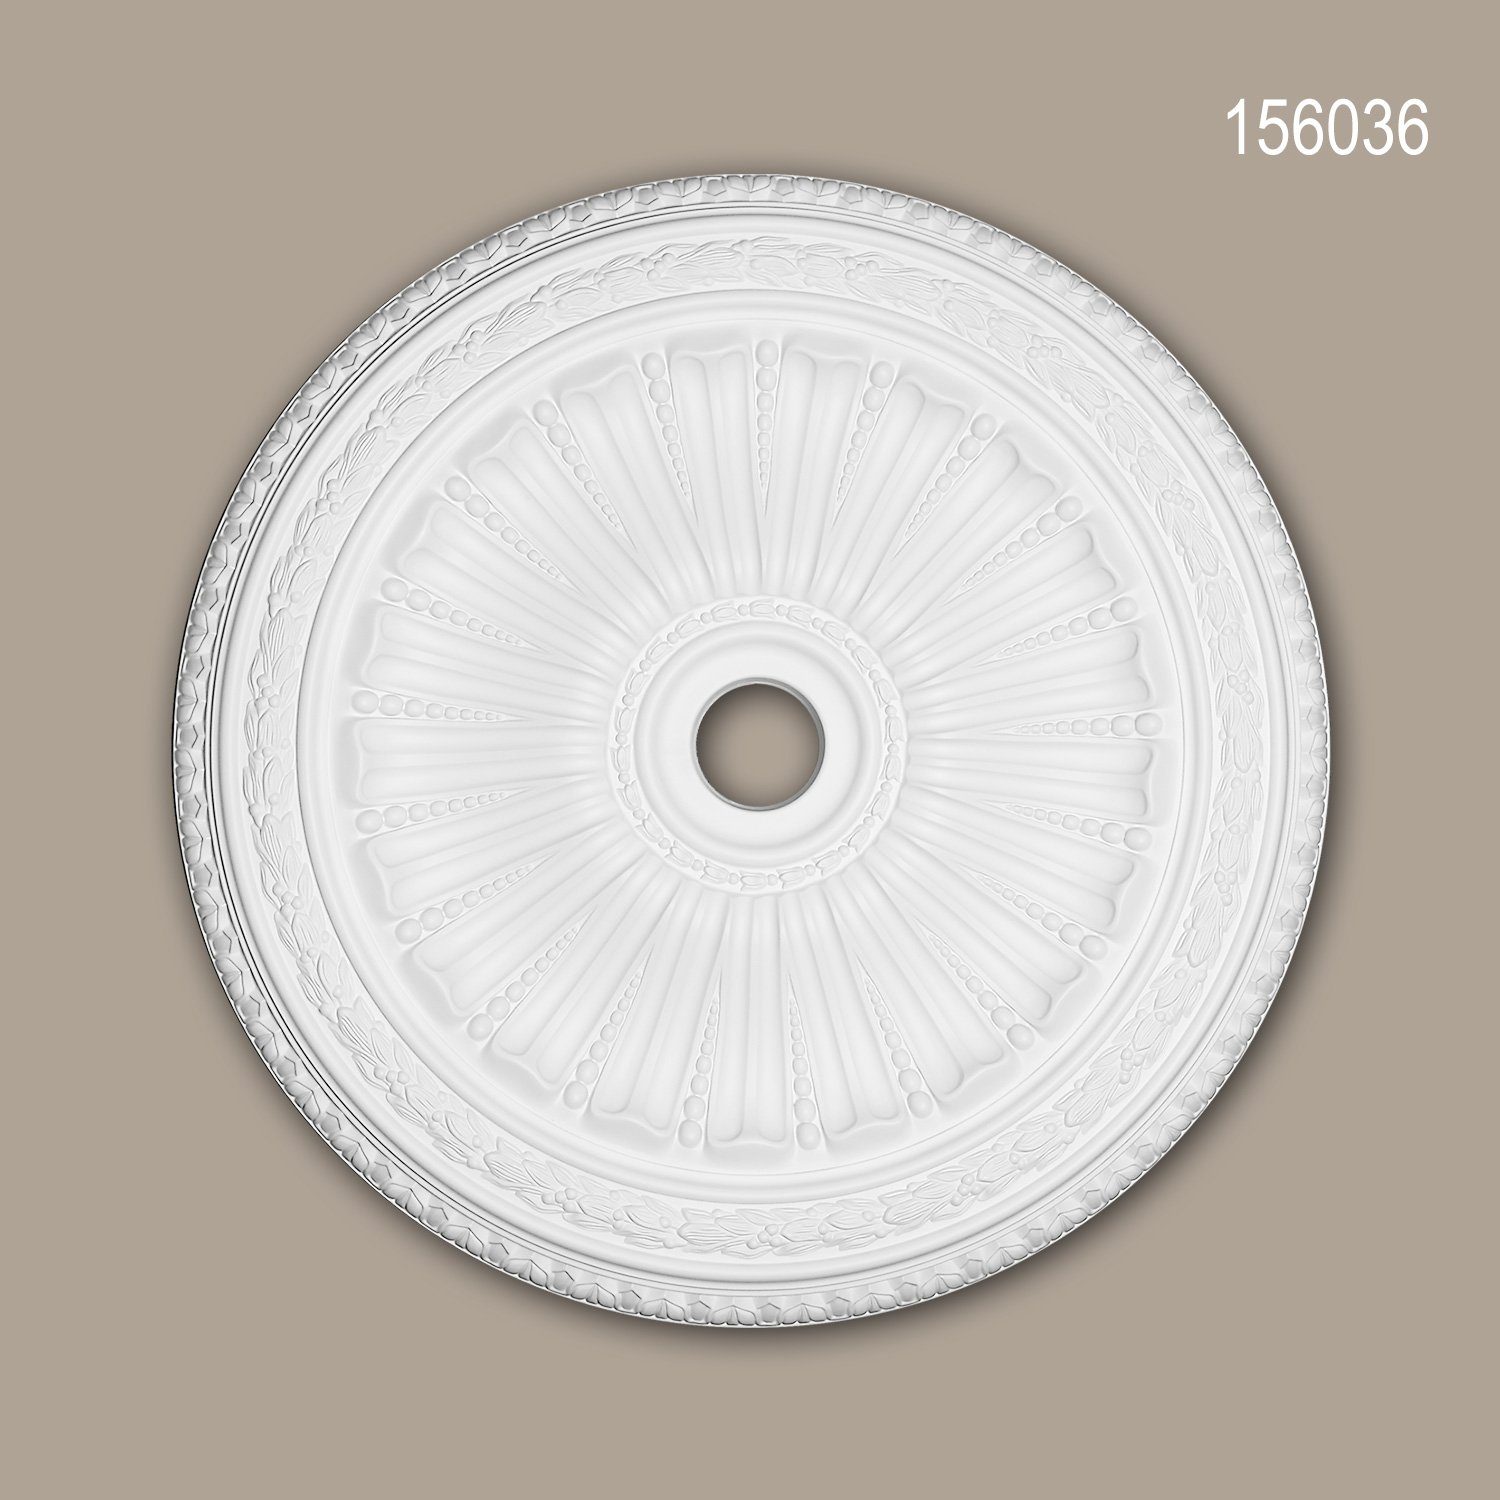 1 Durchmesser Stuckrosette, 156036 Profhome St., Stil: (Rosette, weiß, cm), Zierelement, 88,7 Decken-Rosette Deckenelement, Deckenrosette, Neo-Renaissance vorgrundiert, Medallion,